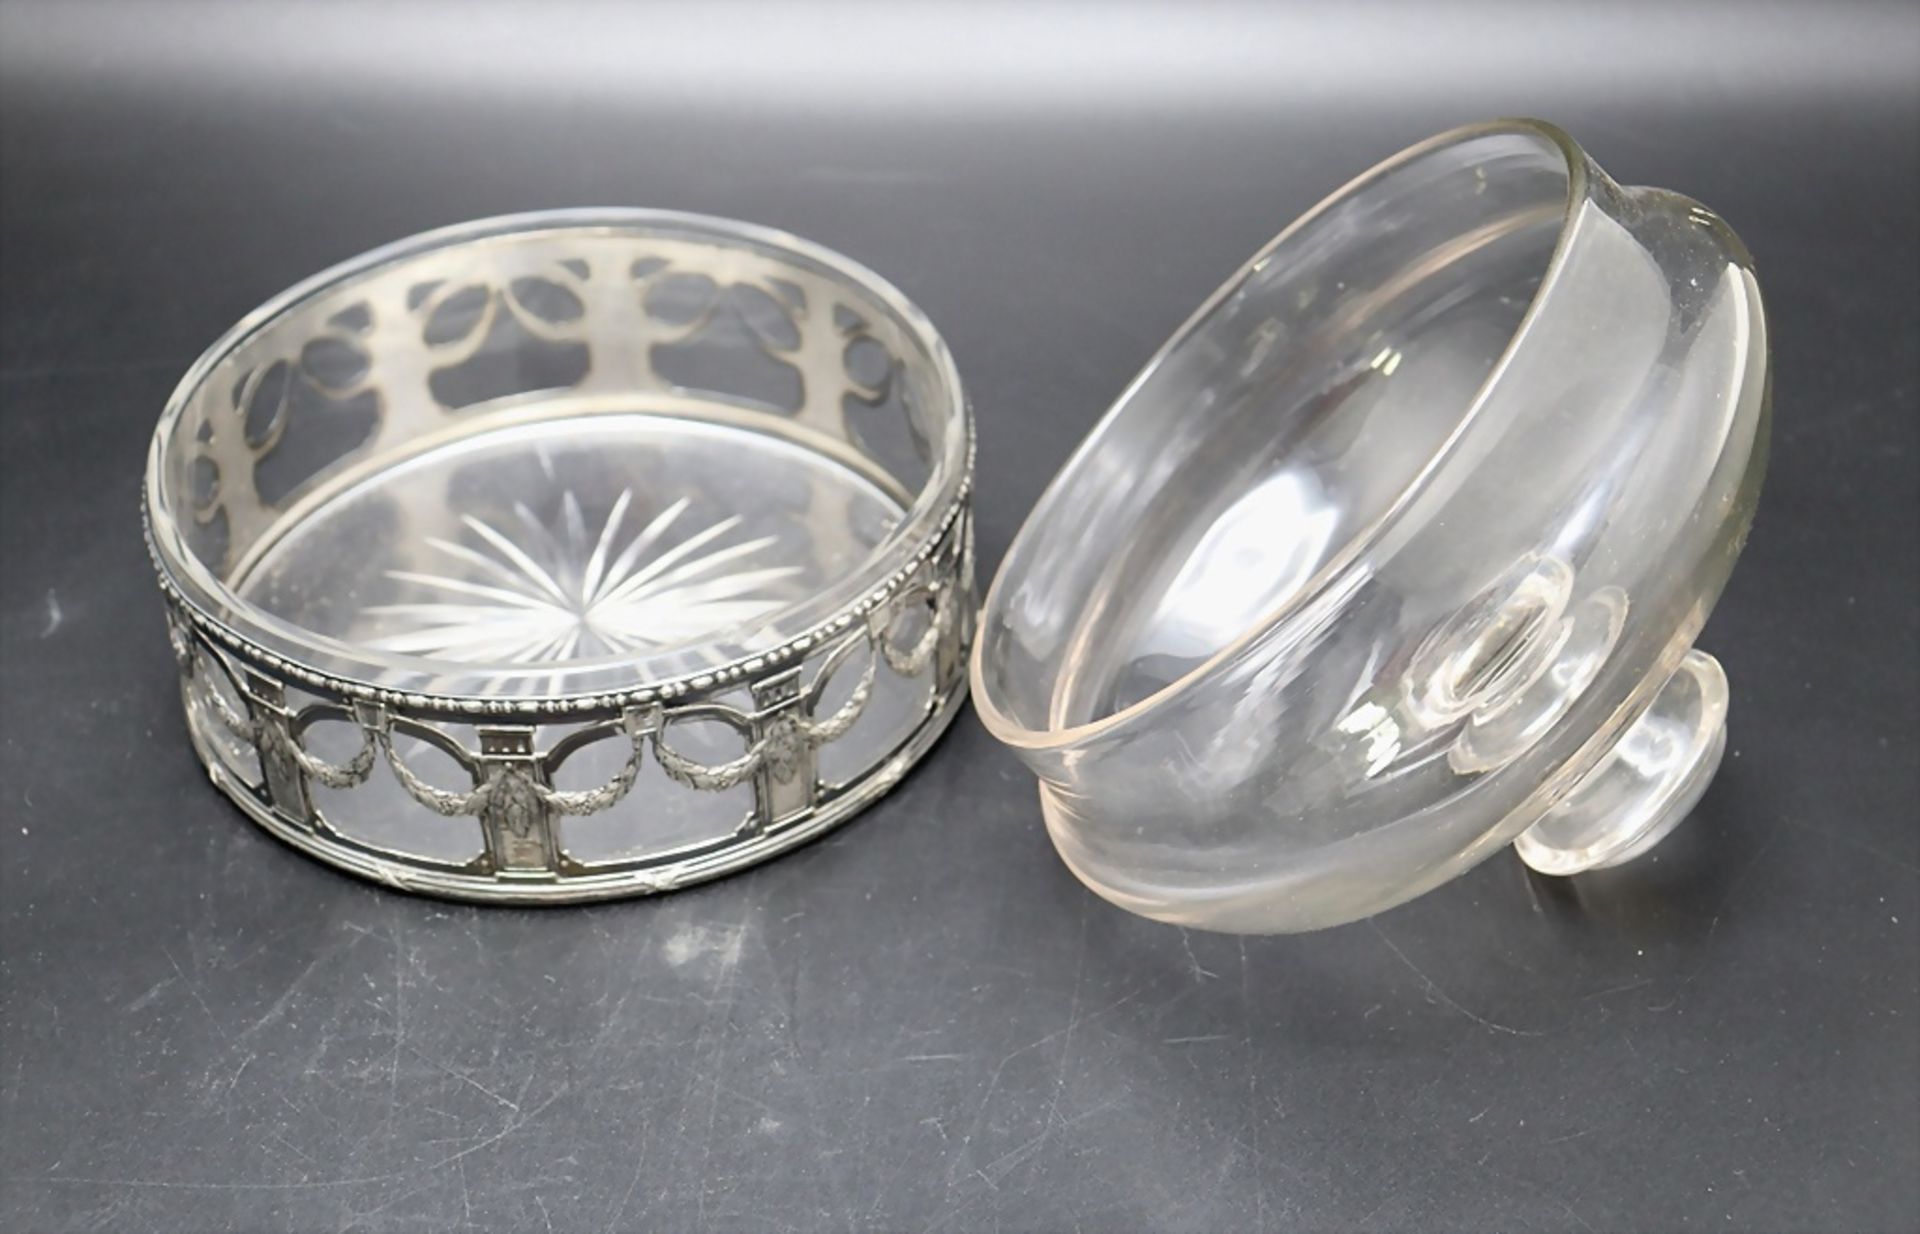 Glasglocke / Glasdose mit Montur / A glass bowl with plated mount, Minerva, Frankreich, Ende ... - Bild 3 aus 4